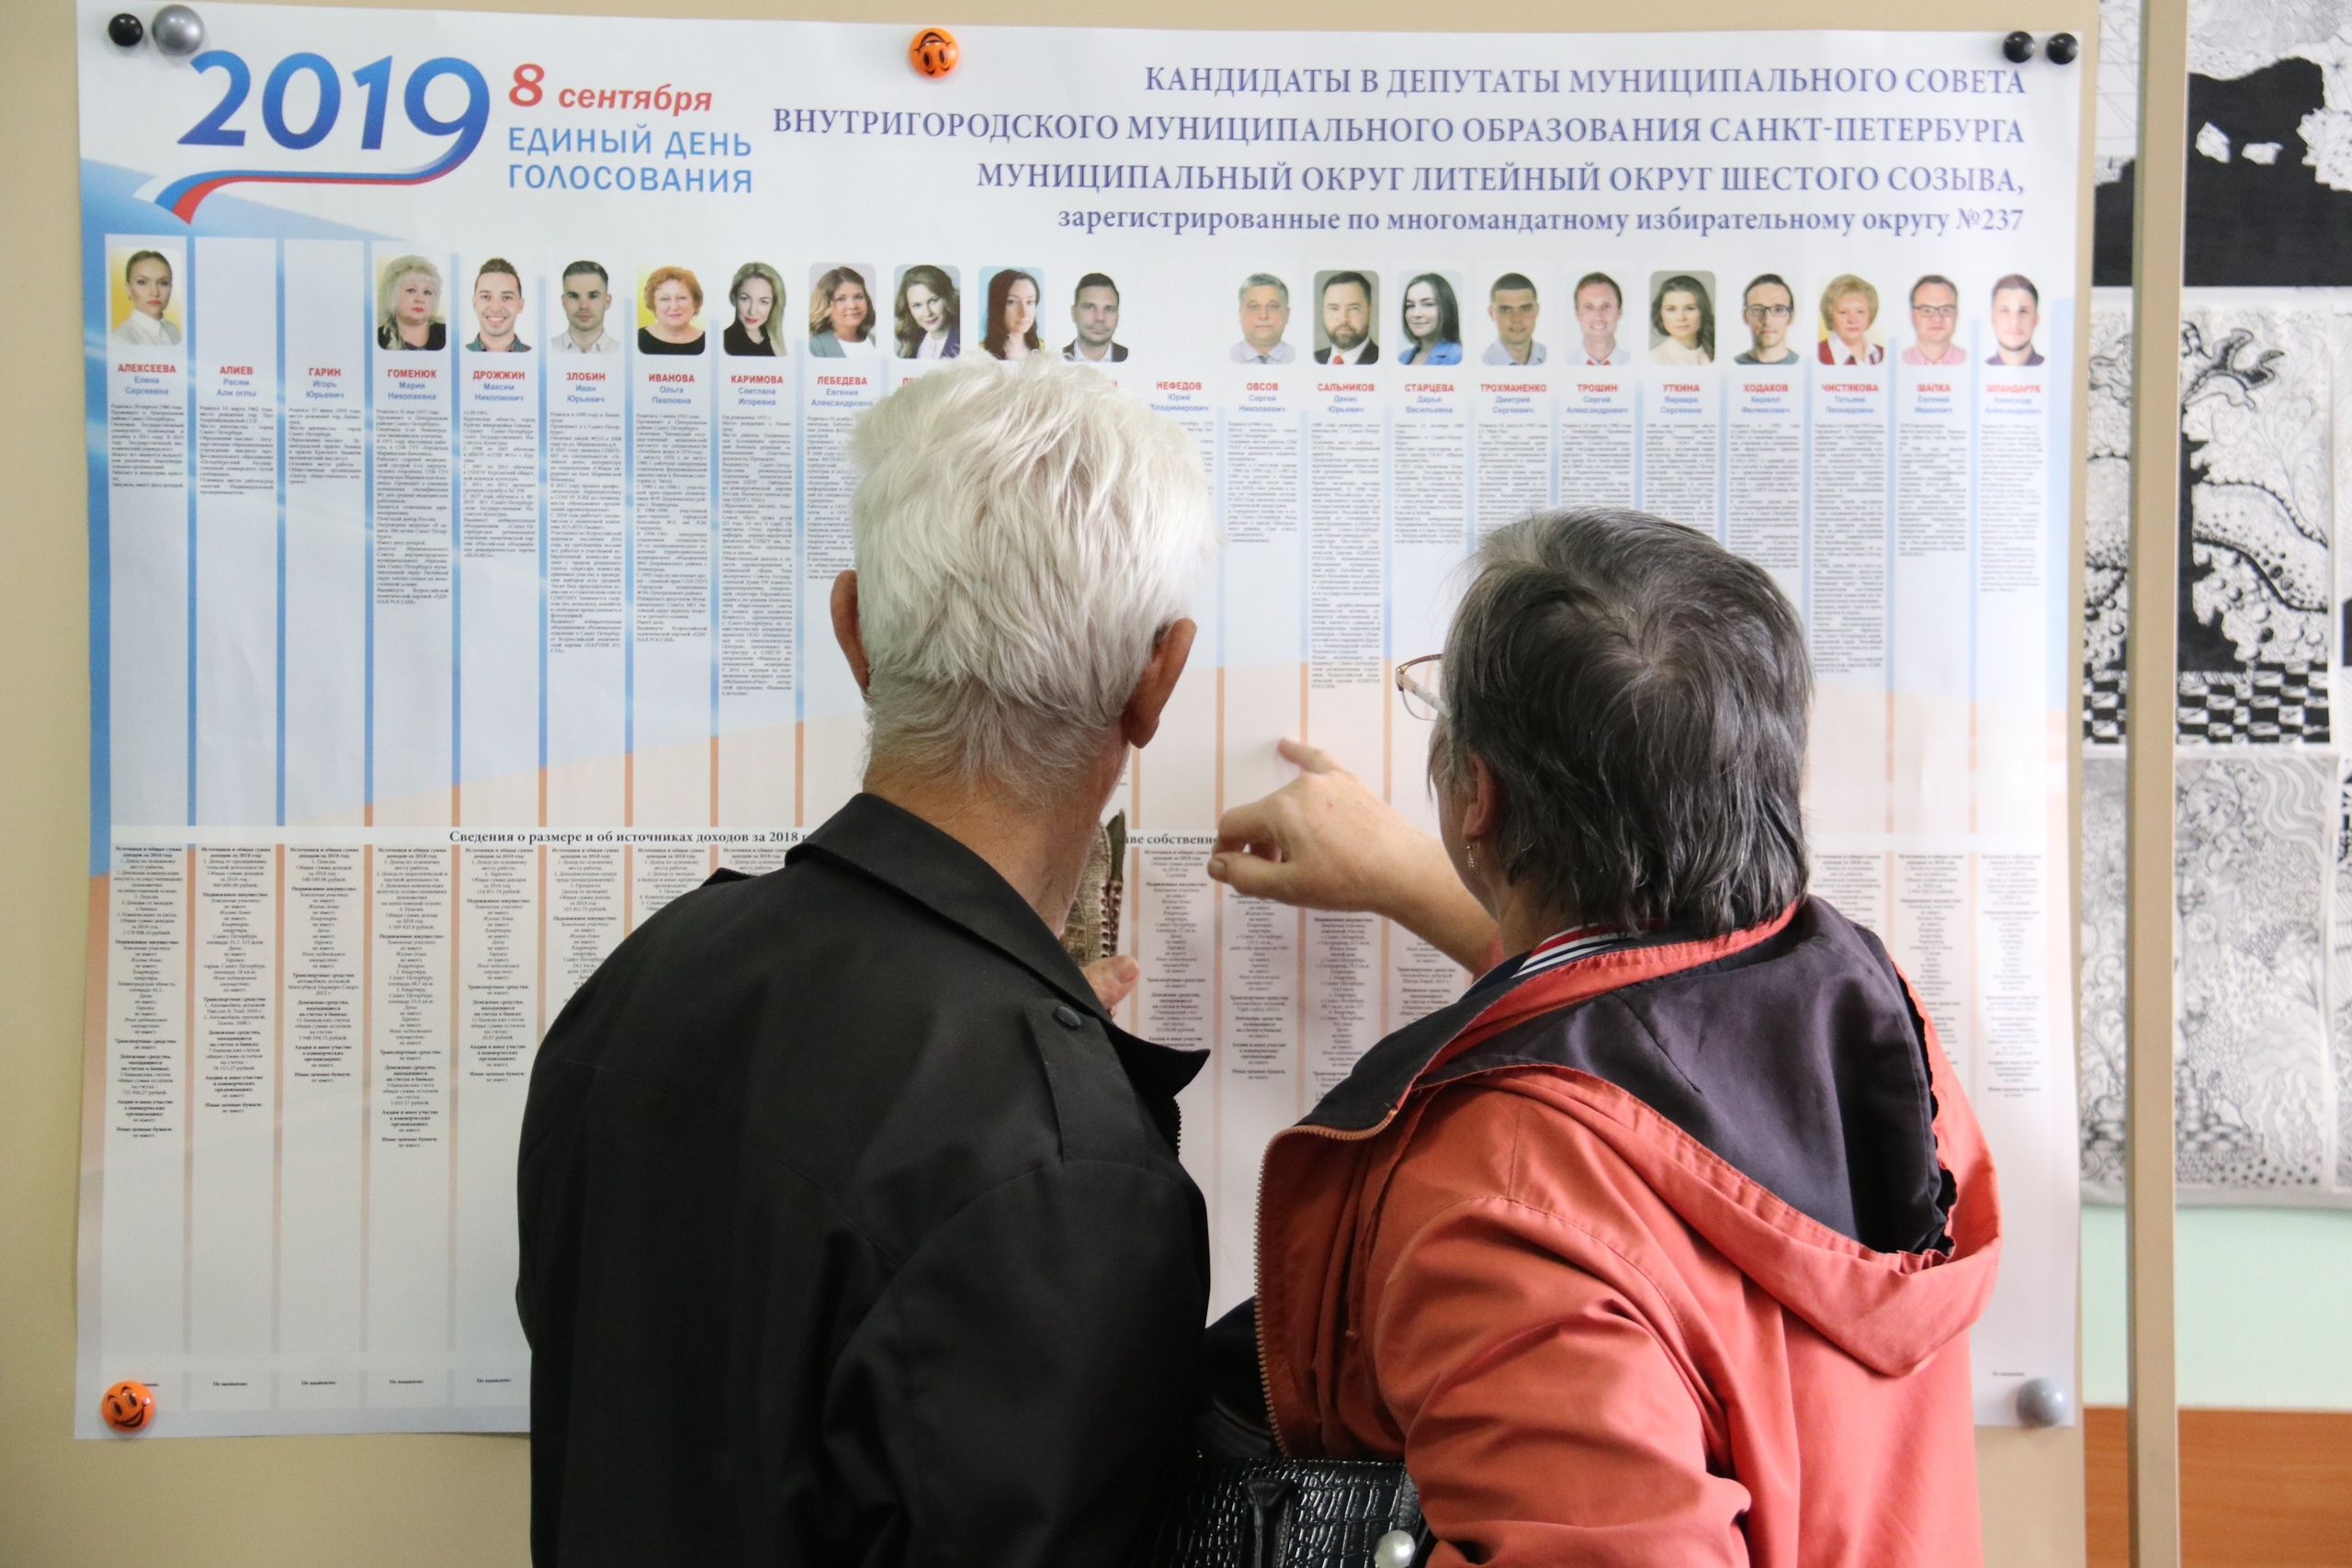 Наплыв избирателей на участки в Петербурге прогнозируют к вечеру 8 сентября